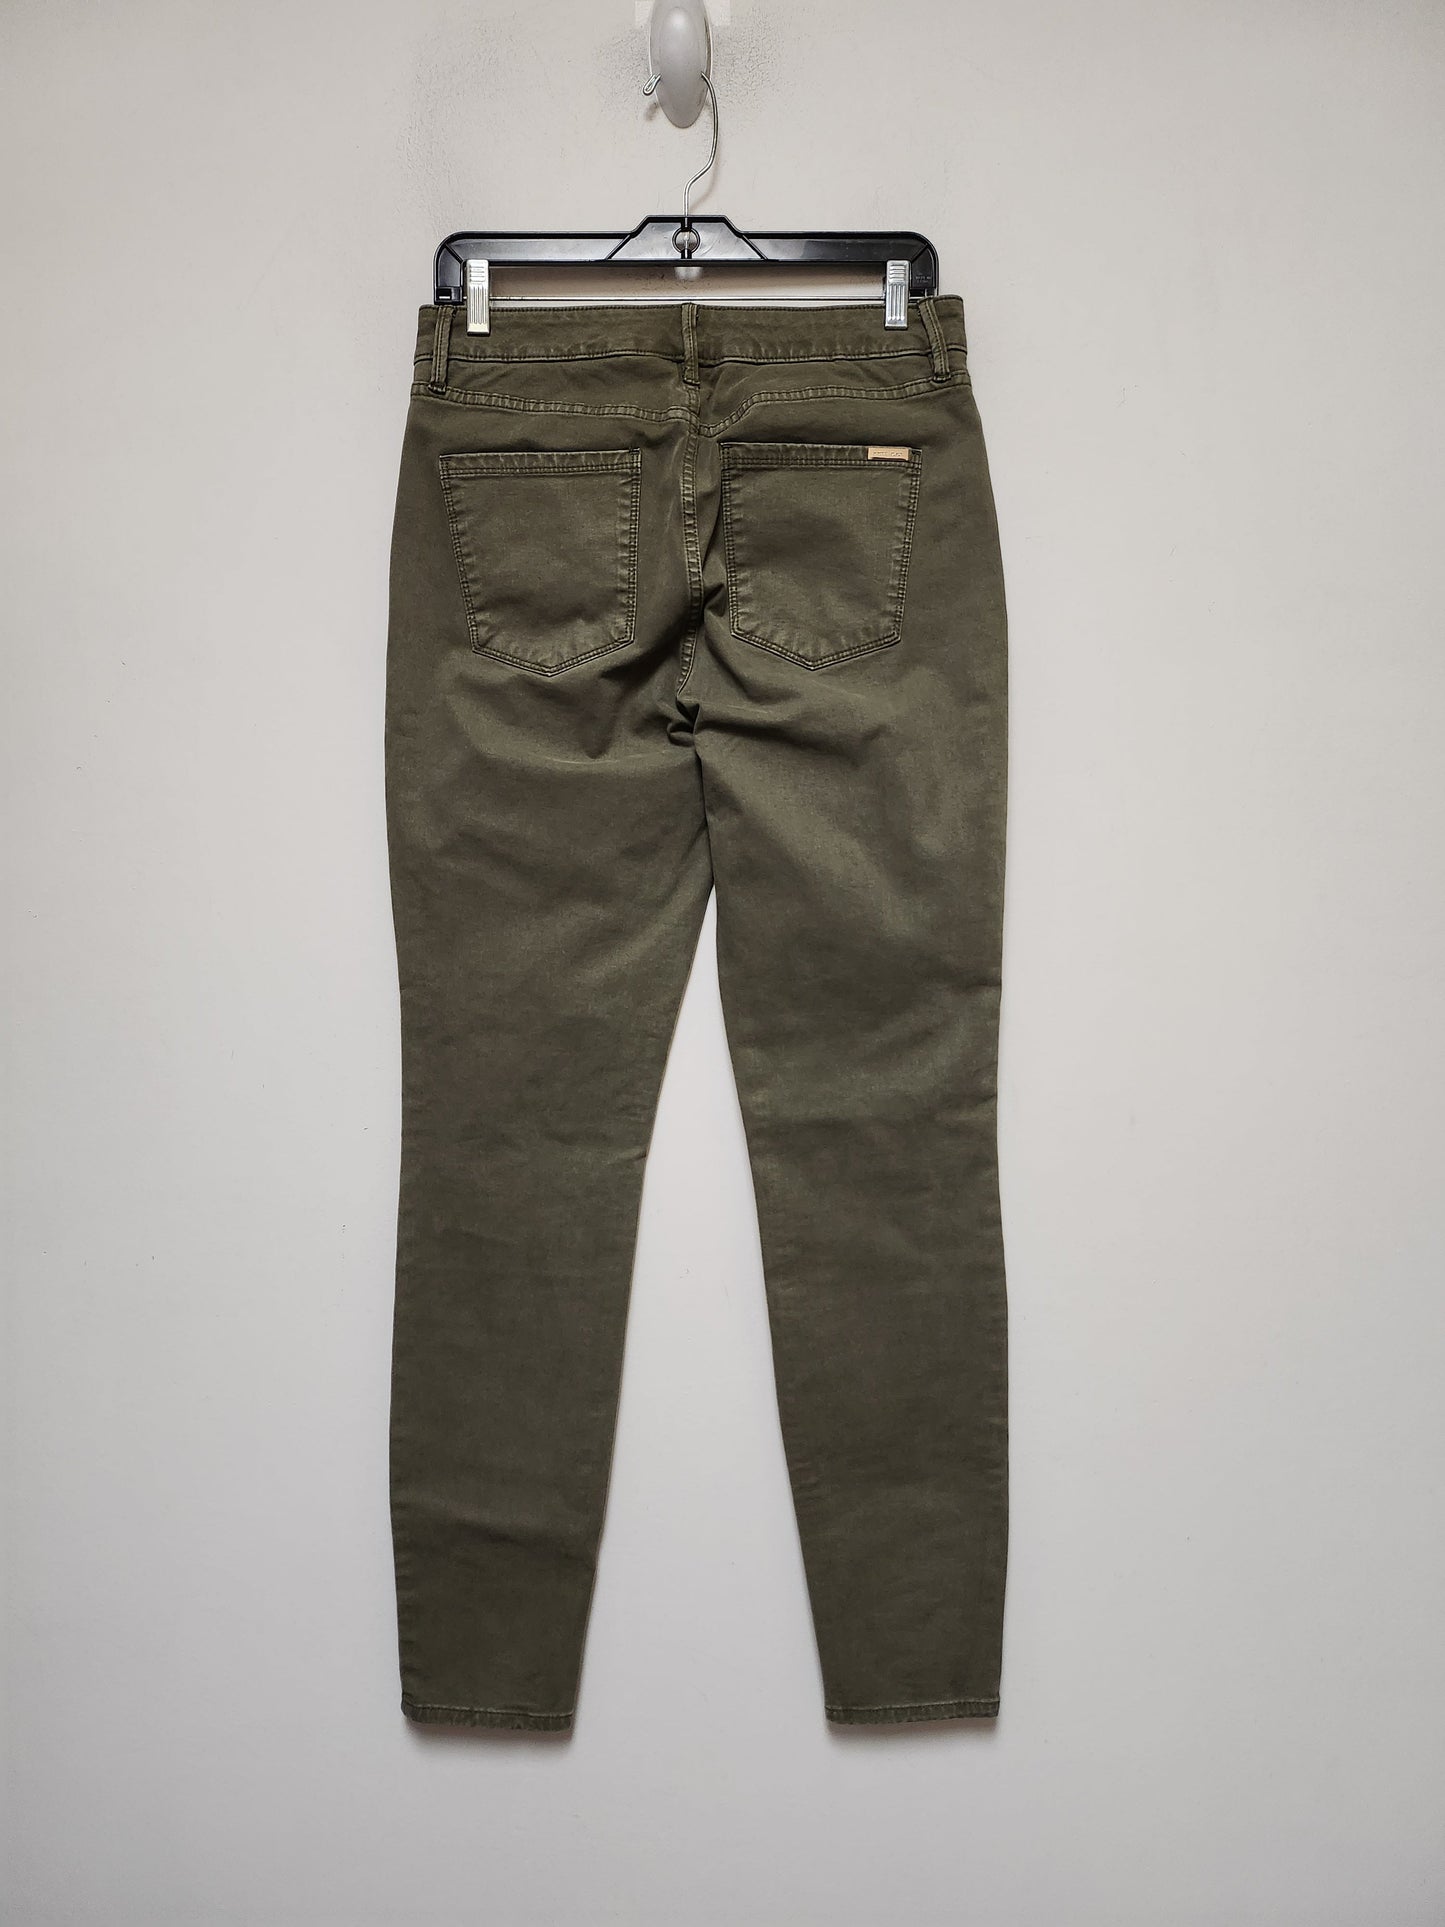 Green Denim Jeans Skinny White House Black Market, Size 6long